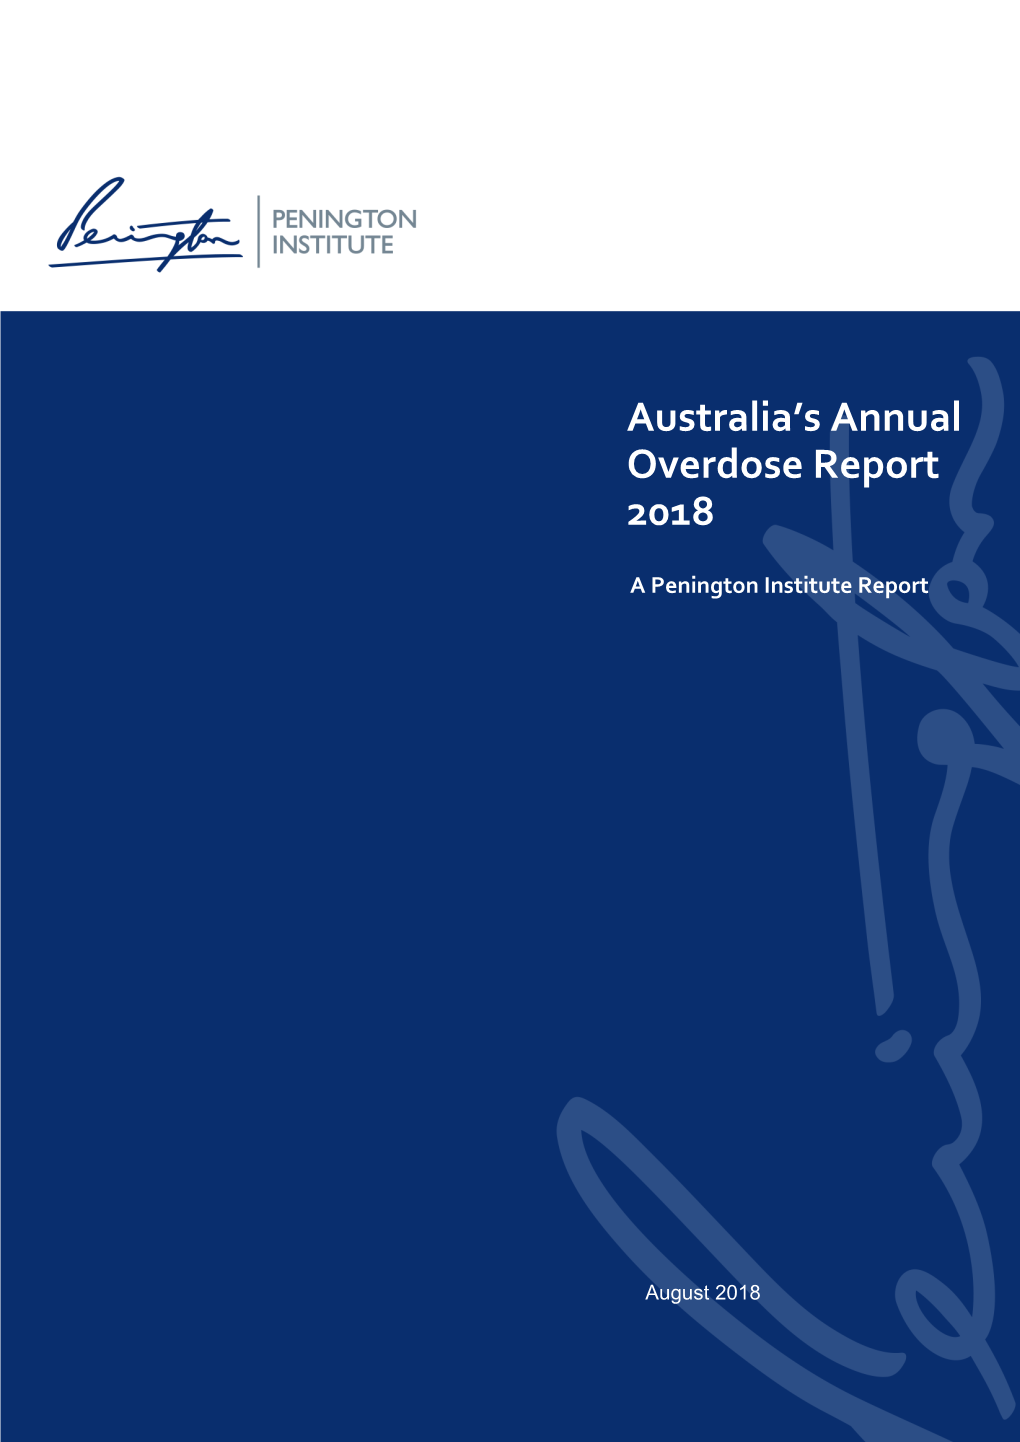 Australia's Annual Overdose Report 2018